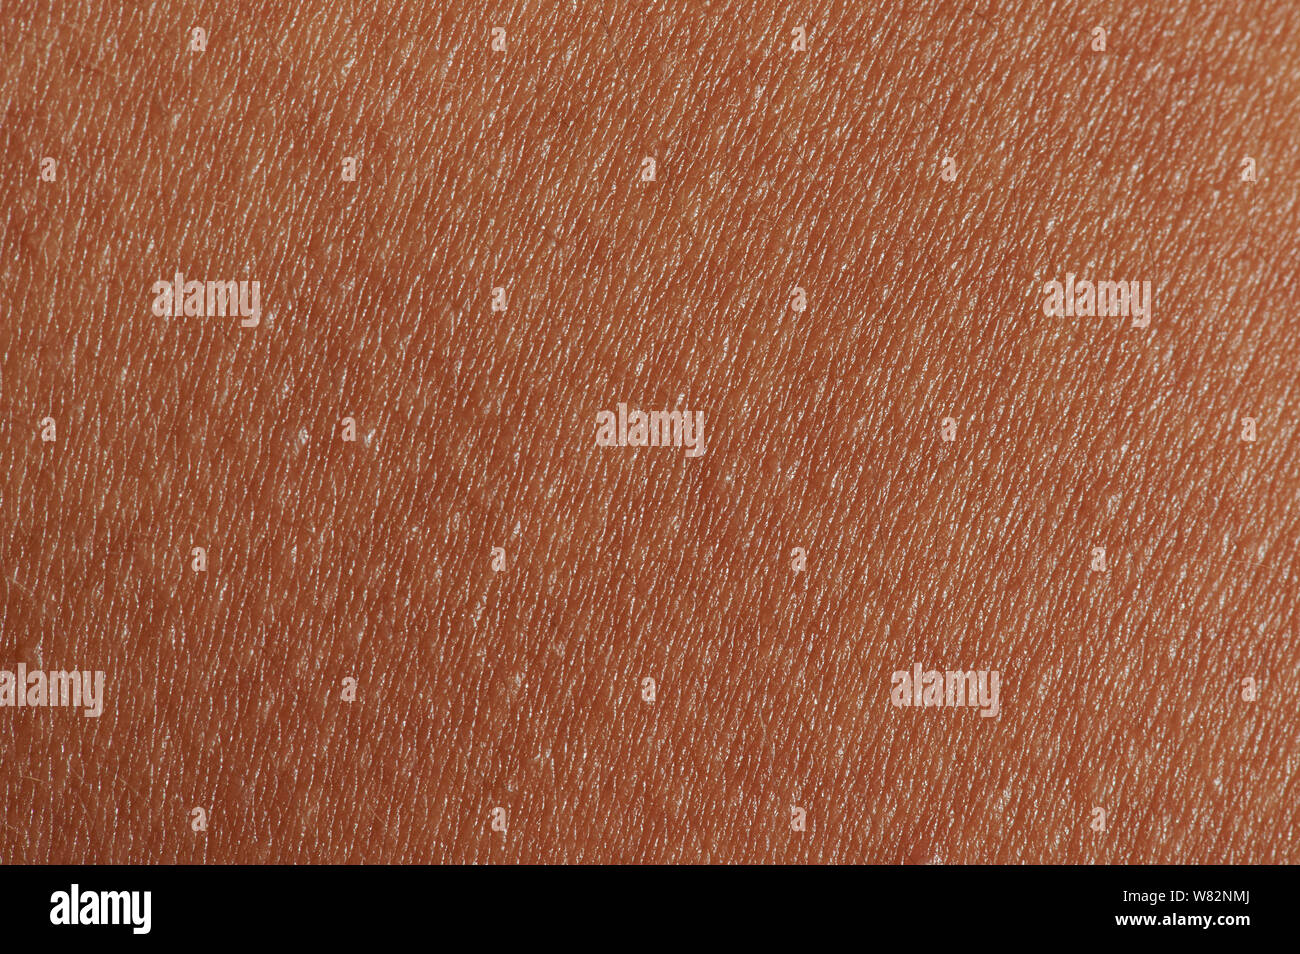 La texture de la peau humaine brun foncé fond macro vue rapprochée Banque D'Images